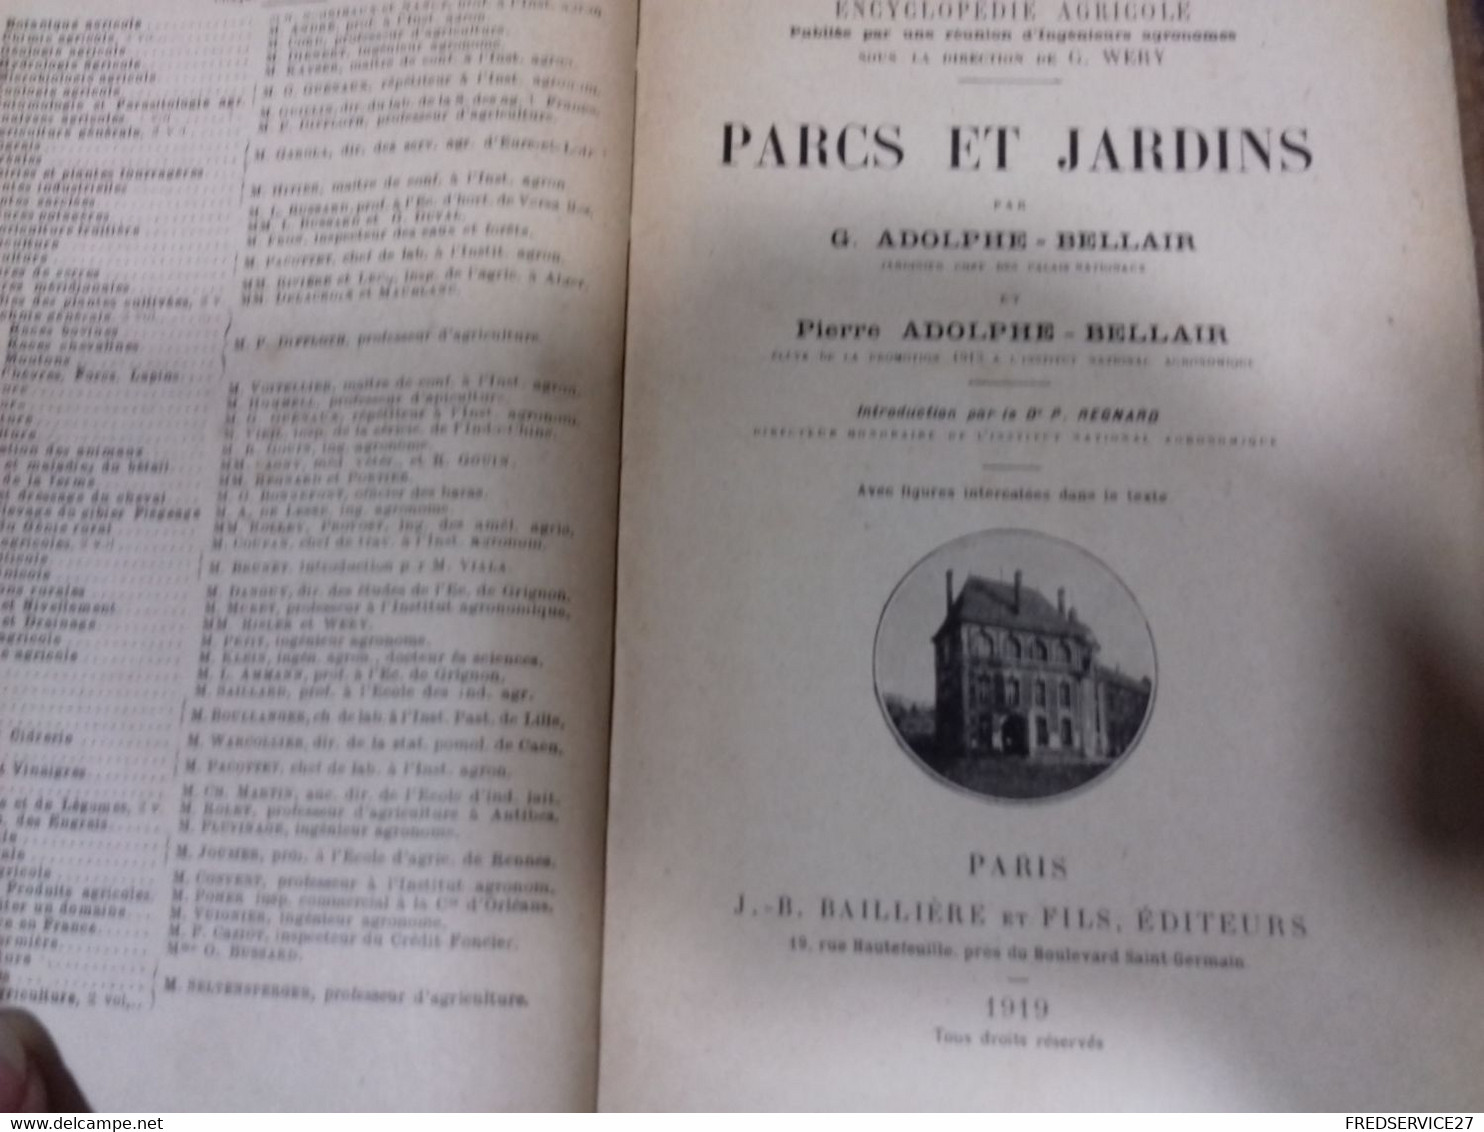 43  //   ENCYCLOPEDIE AGRICOLE   PARCS ET JARDINS  BELLAIR ET BELLAIR   1919 - Encyclopaedia